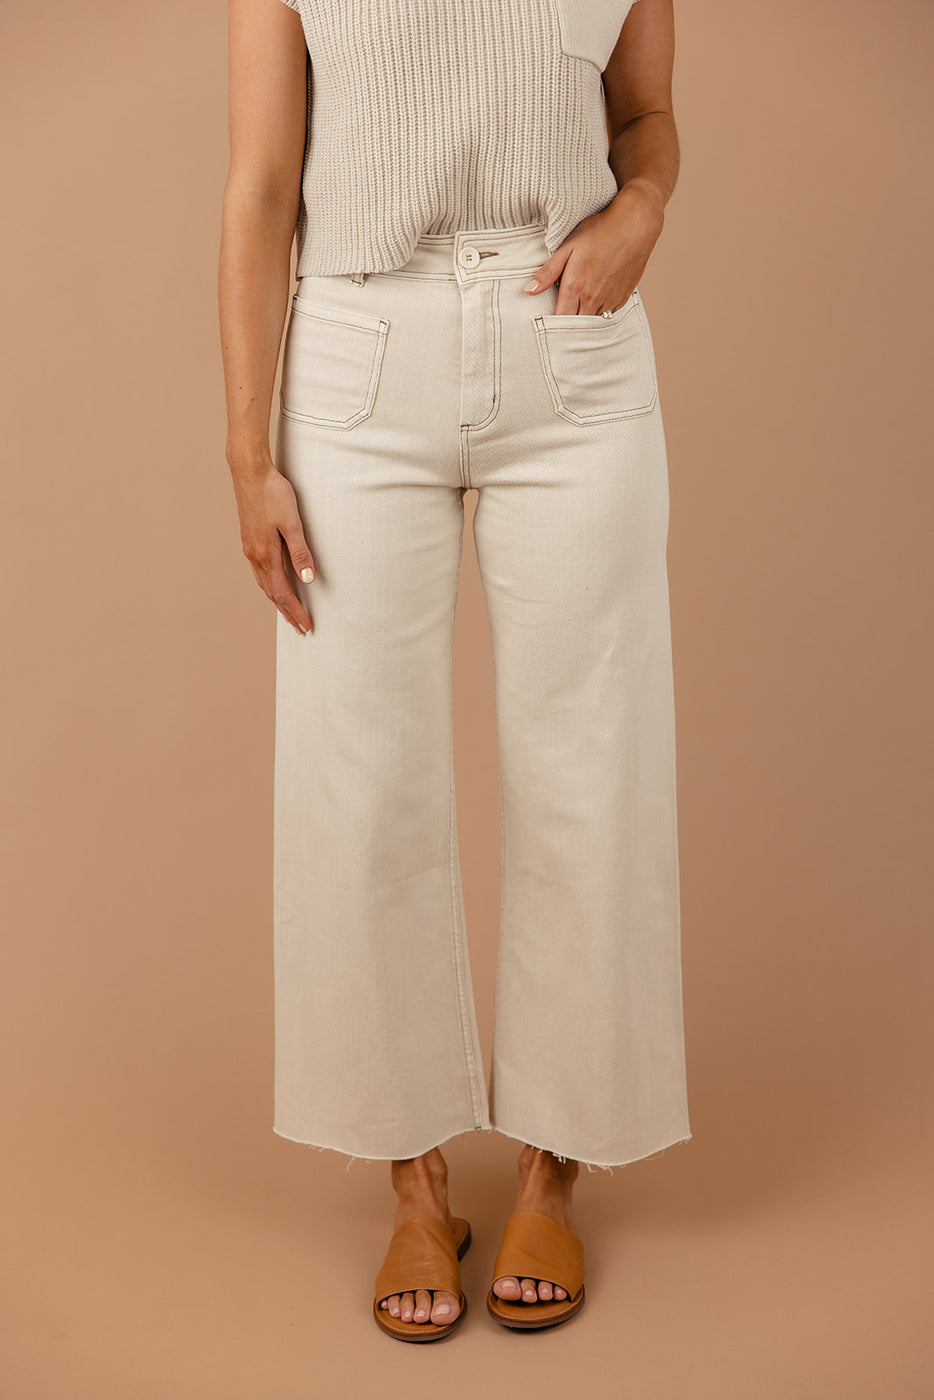 a woman wearing white pants